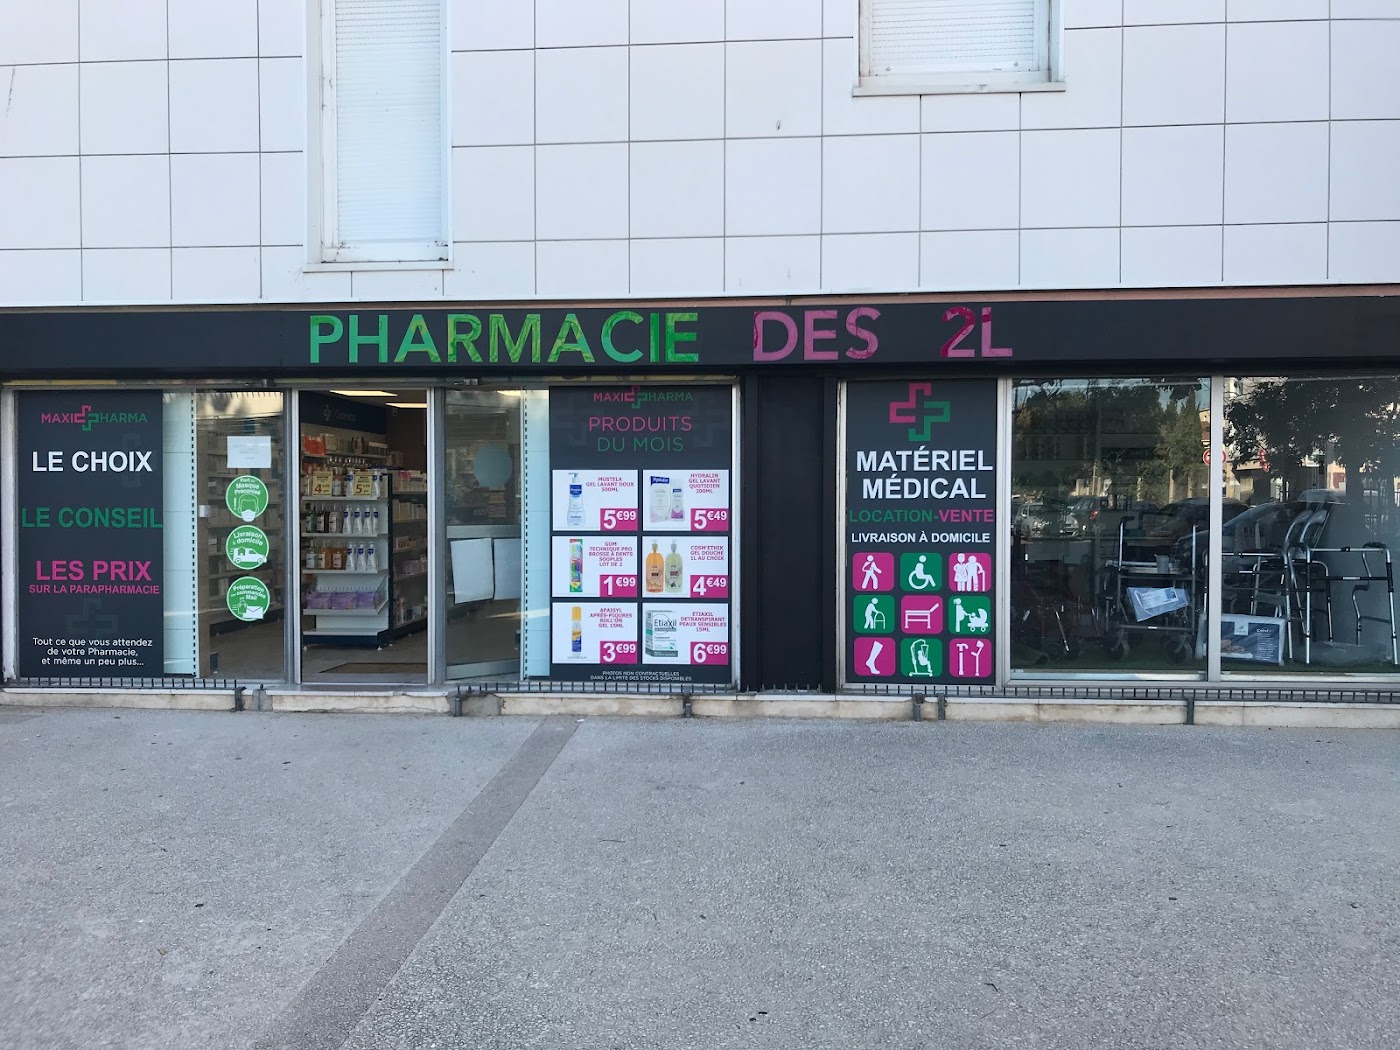 Pharmacie des 2L